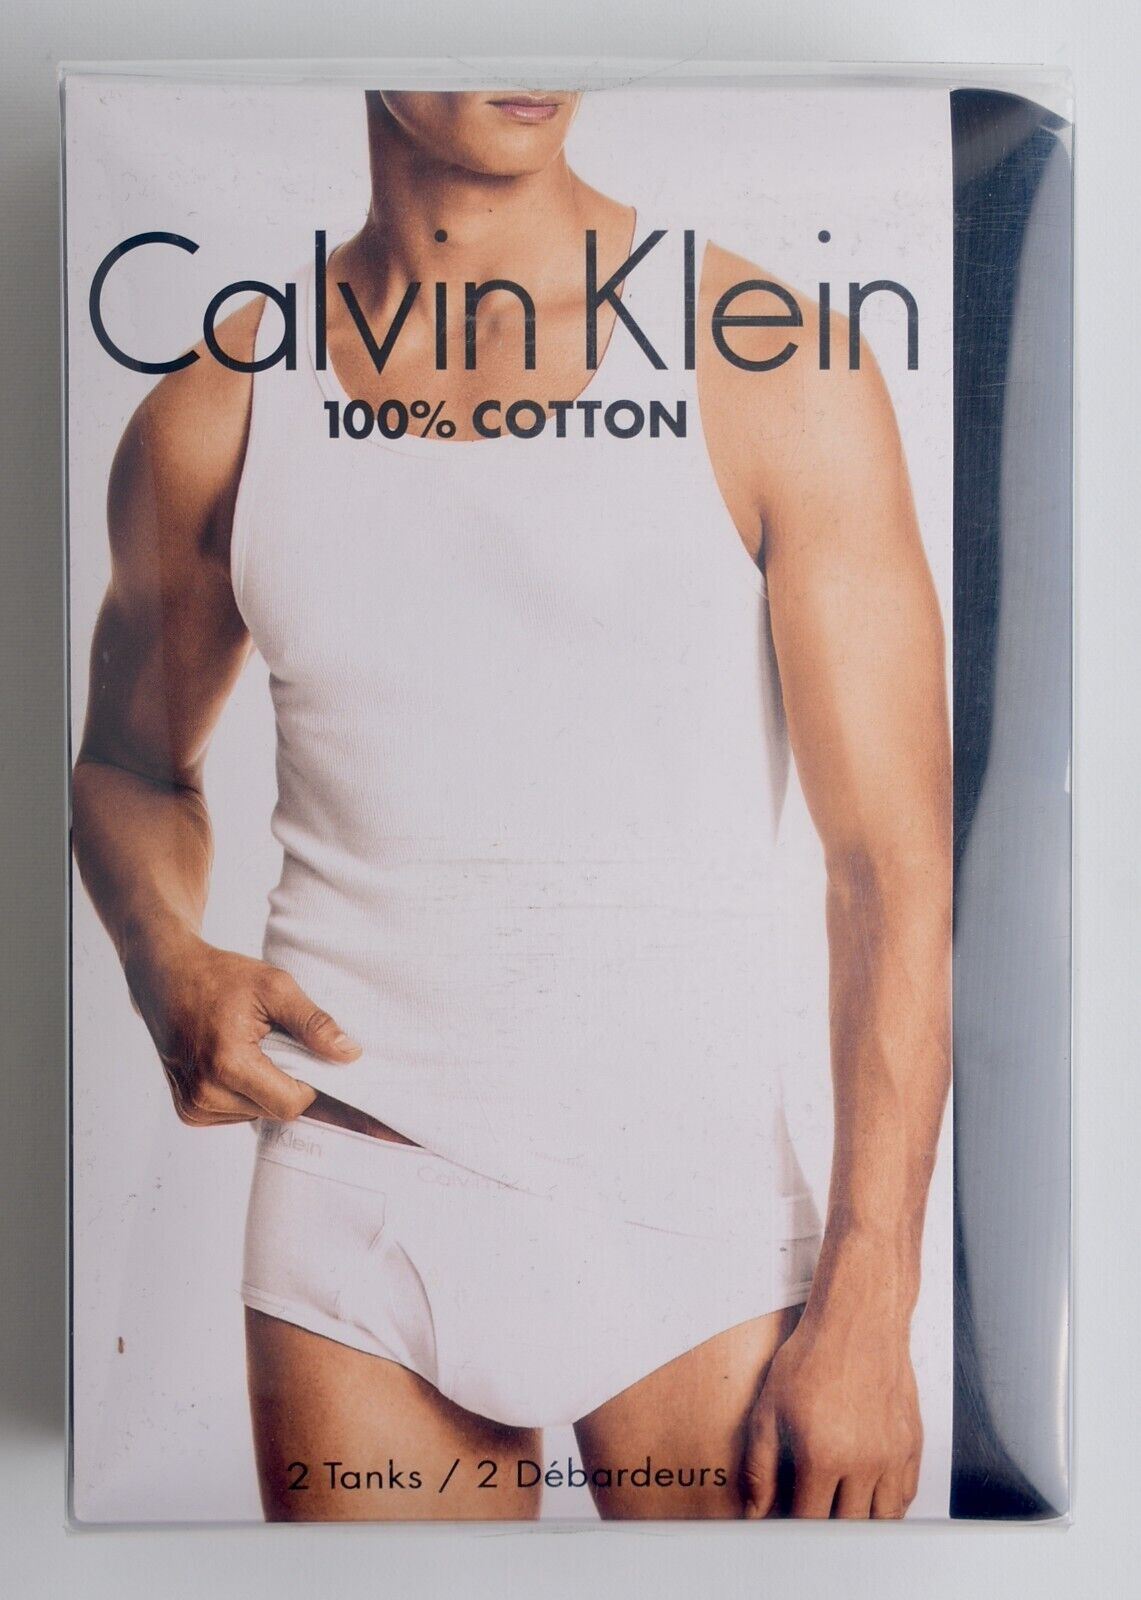 CALVIN KLEIN Men's 2-Pack Black Tank Tops, 100% Cotton, Vests, size S